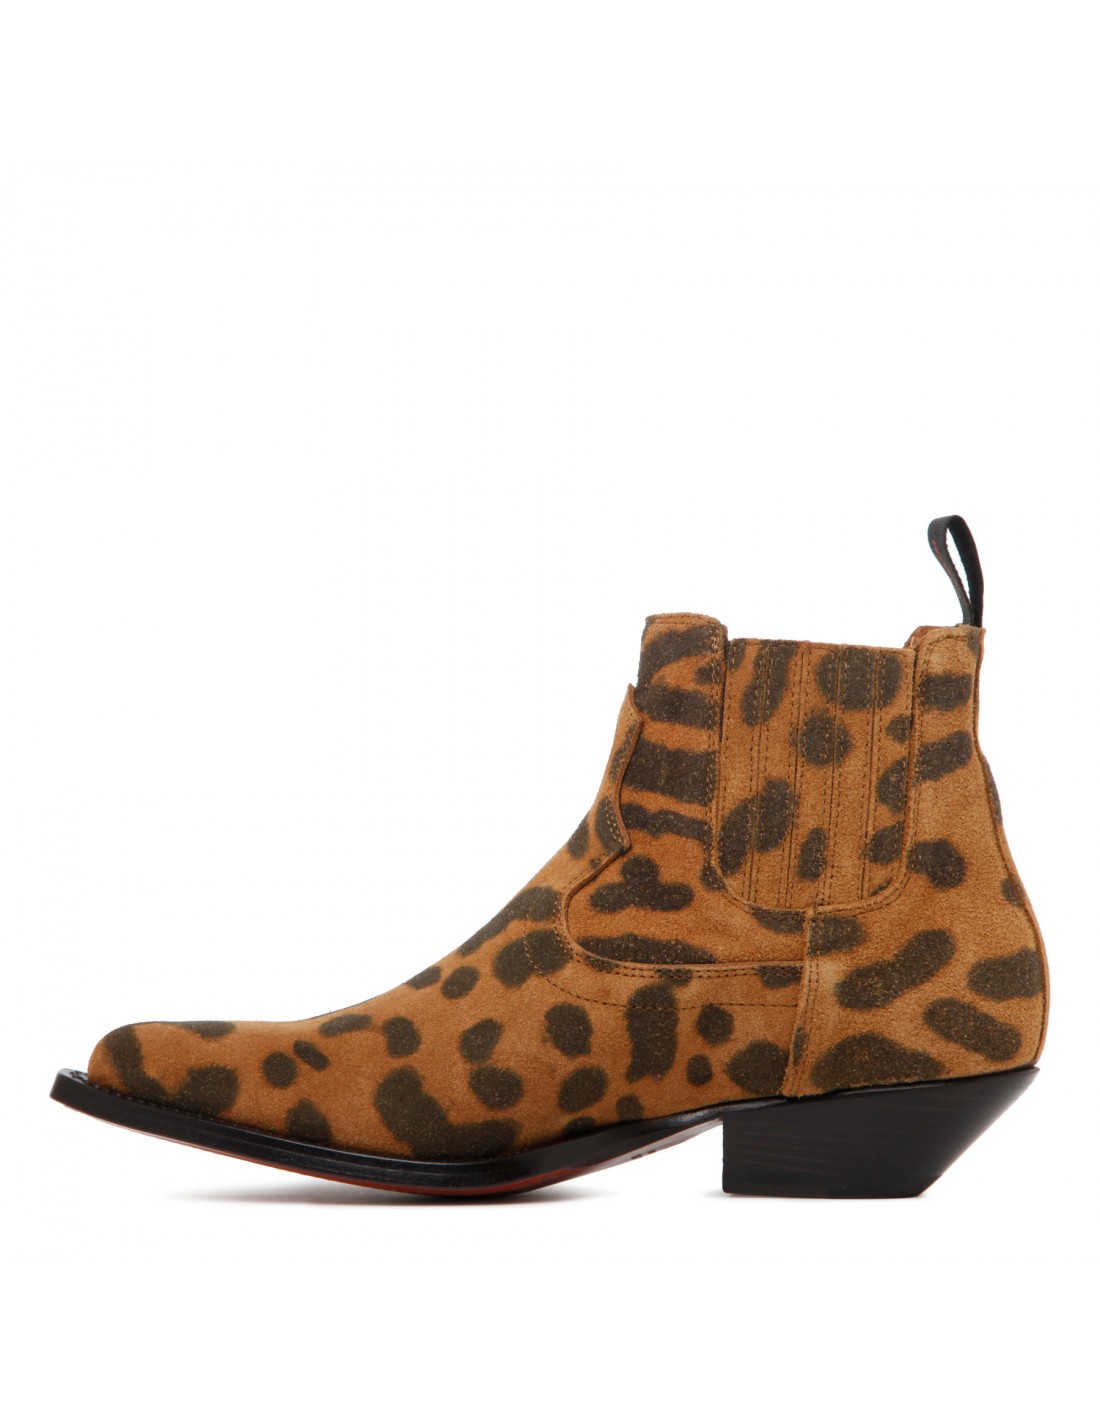 Hidalgo mini leopard booties